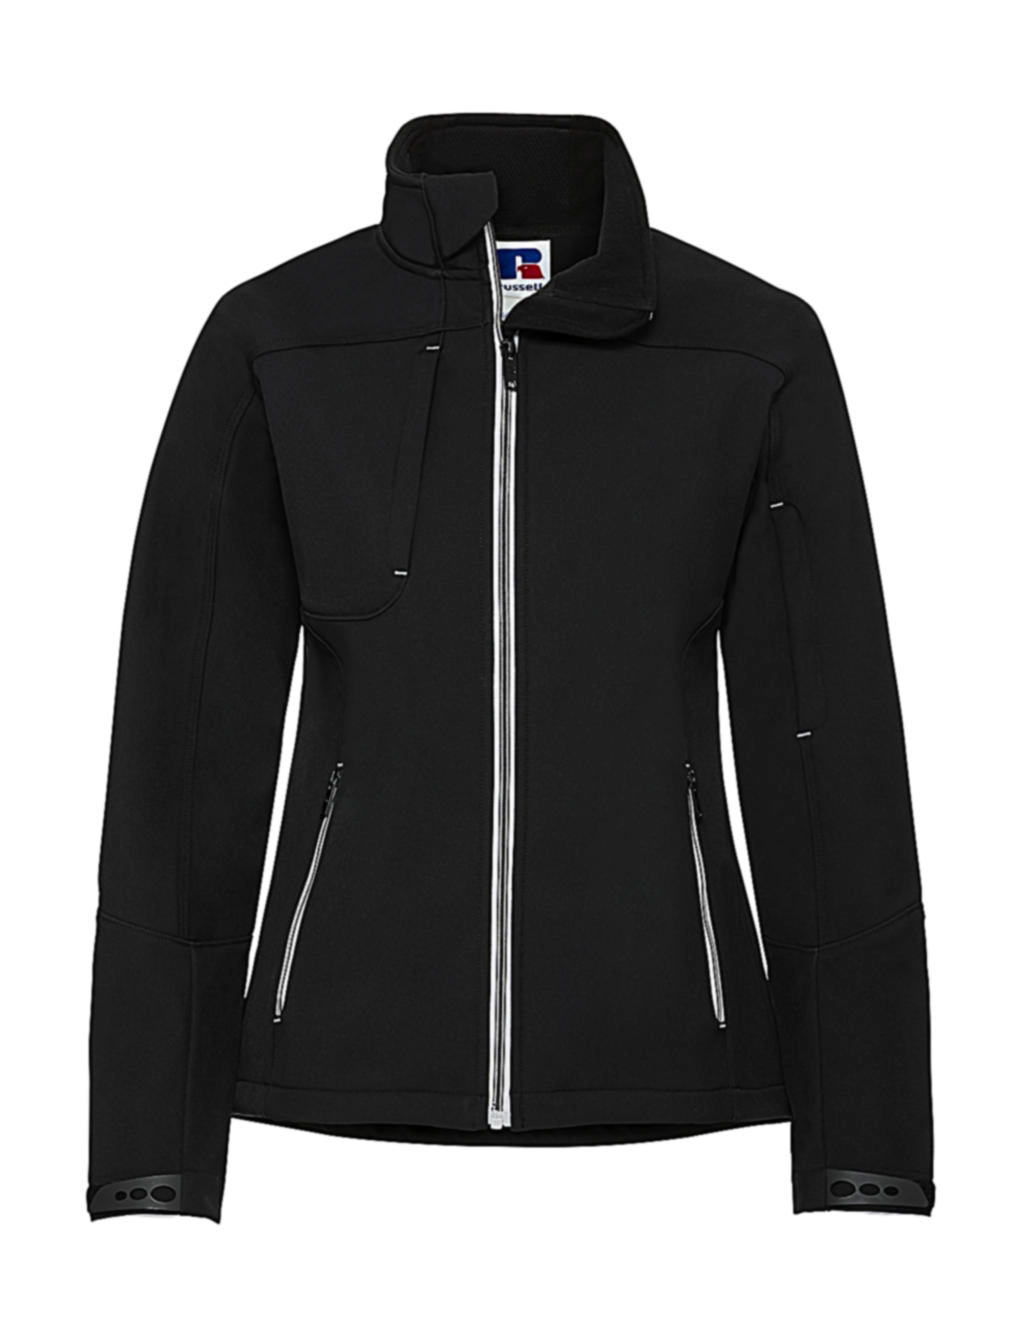 Ladies` Bionic Softshell Jacket zum Besticken und Bedrucken in der Farbe Black mit Ihren Logo, Schriftzug oder Motiv.